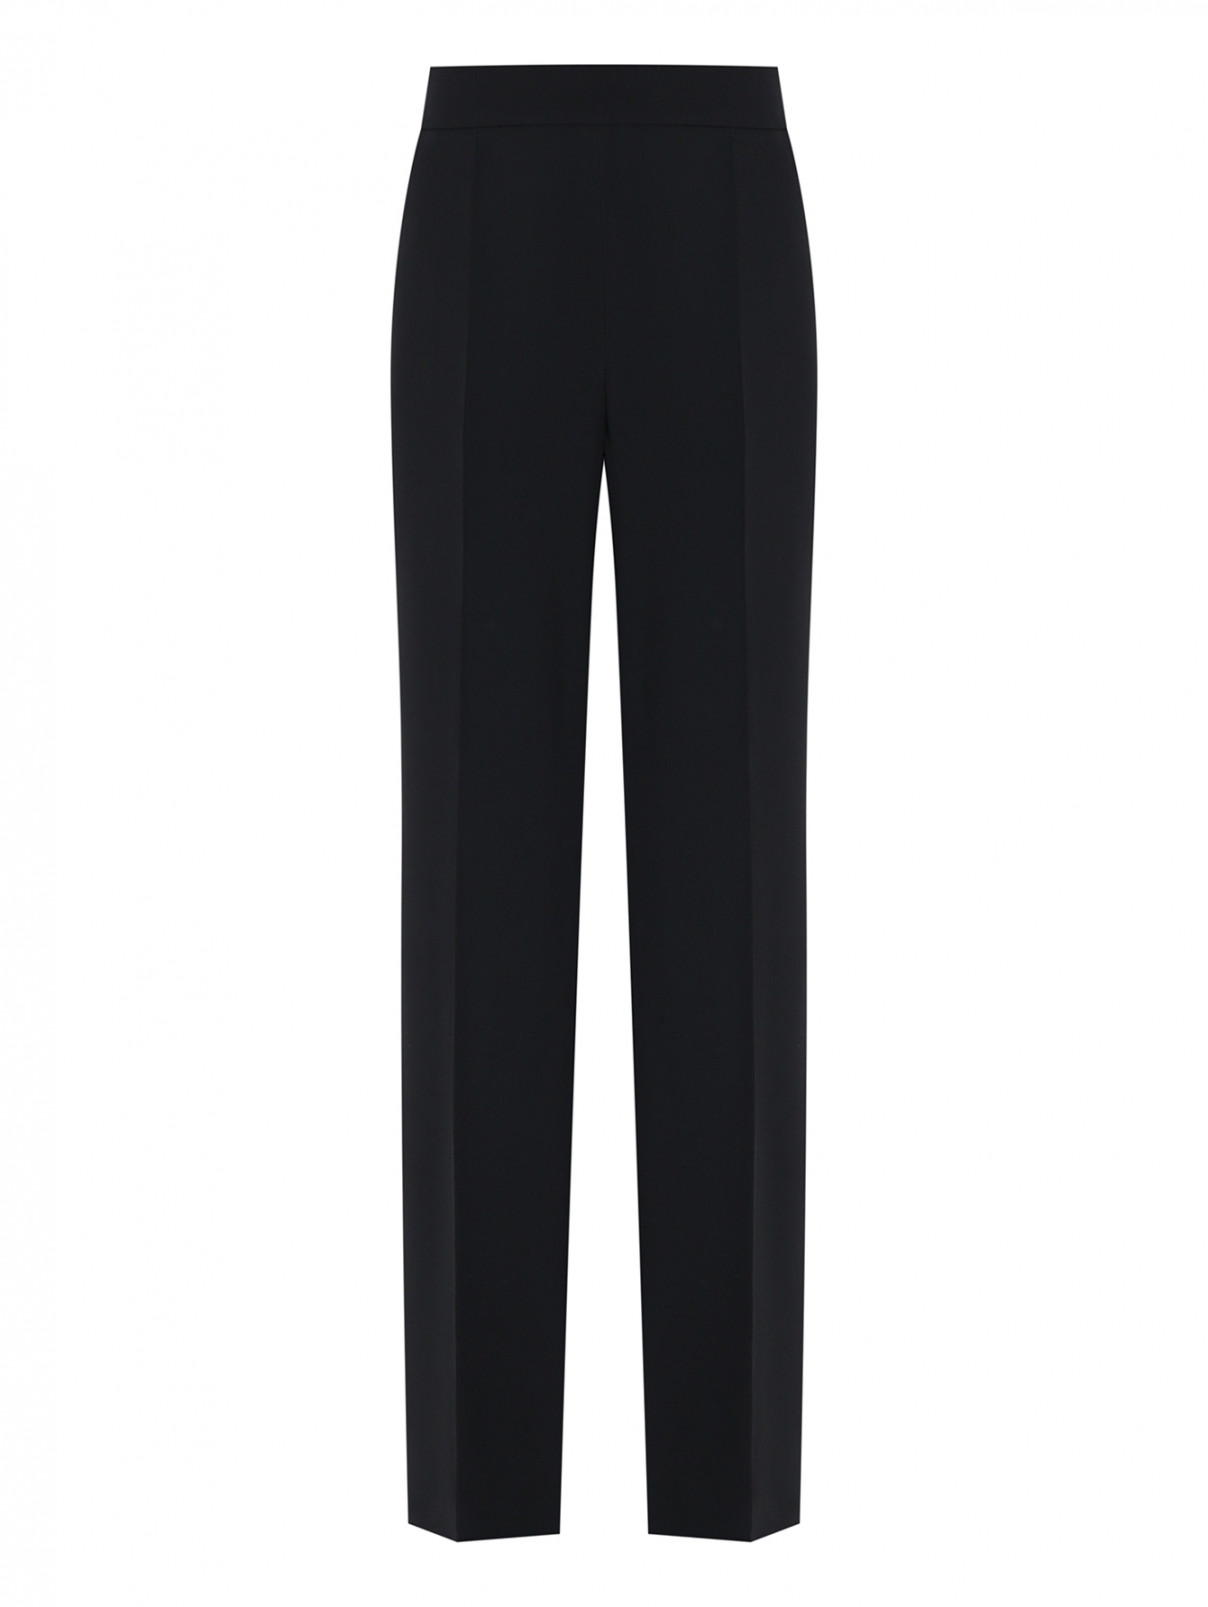 Однотонные брюки из смешанной вискозы Luisa Spagnoli  –  Общий вид  – Цвет:  Черный